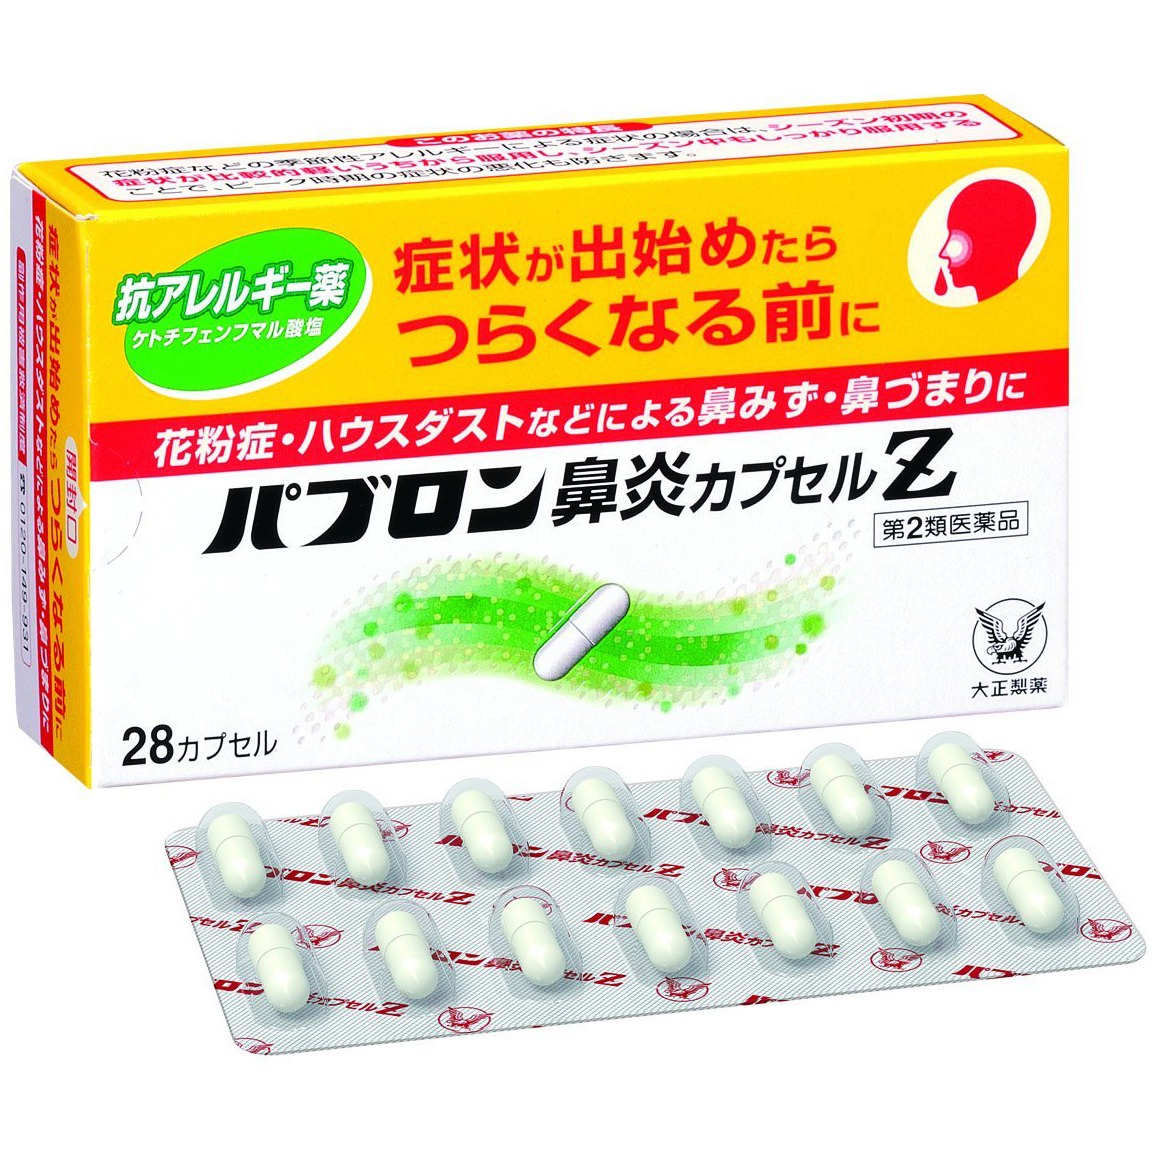 Японские препараты купить. Японские таблетки. Японские таблетки от аллергии. Китайские лекарства. Китайские таблетки от аллергии.